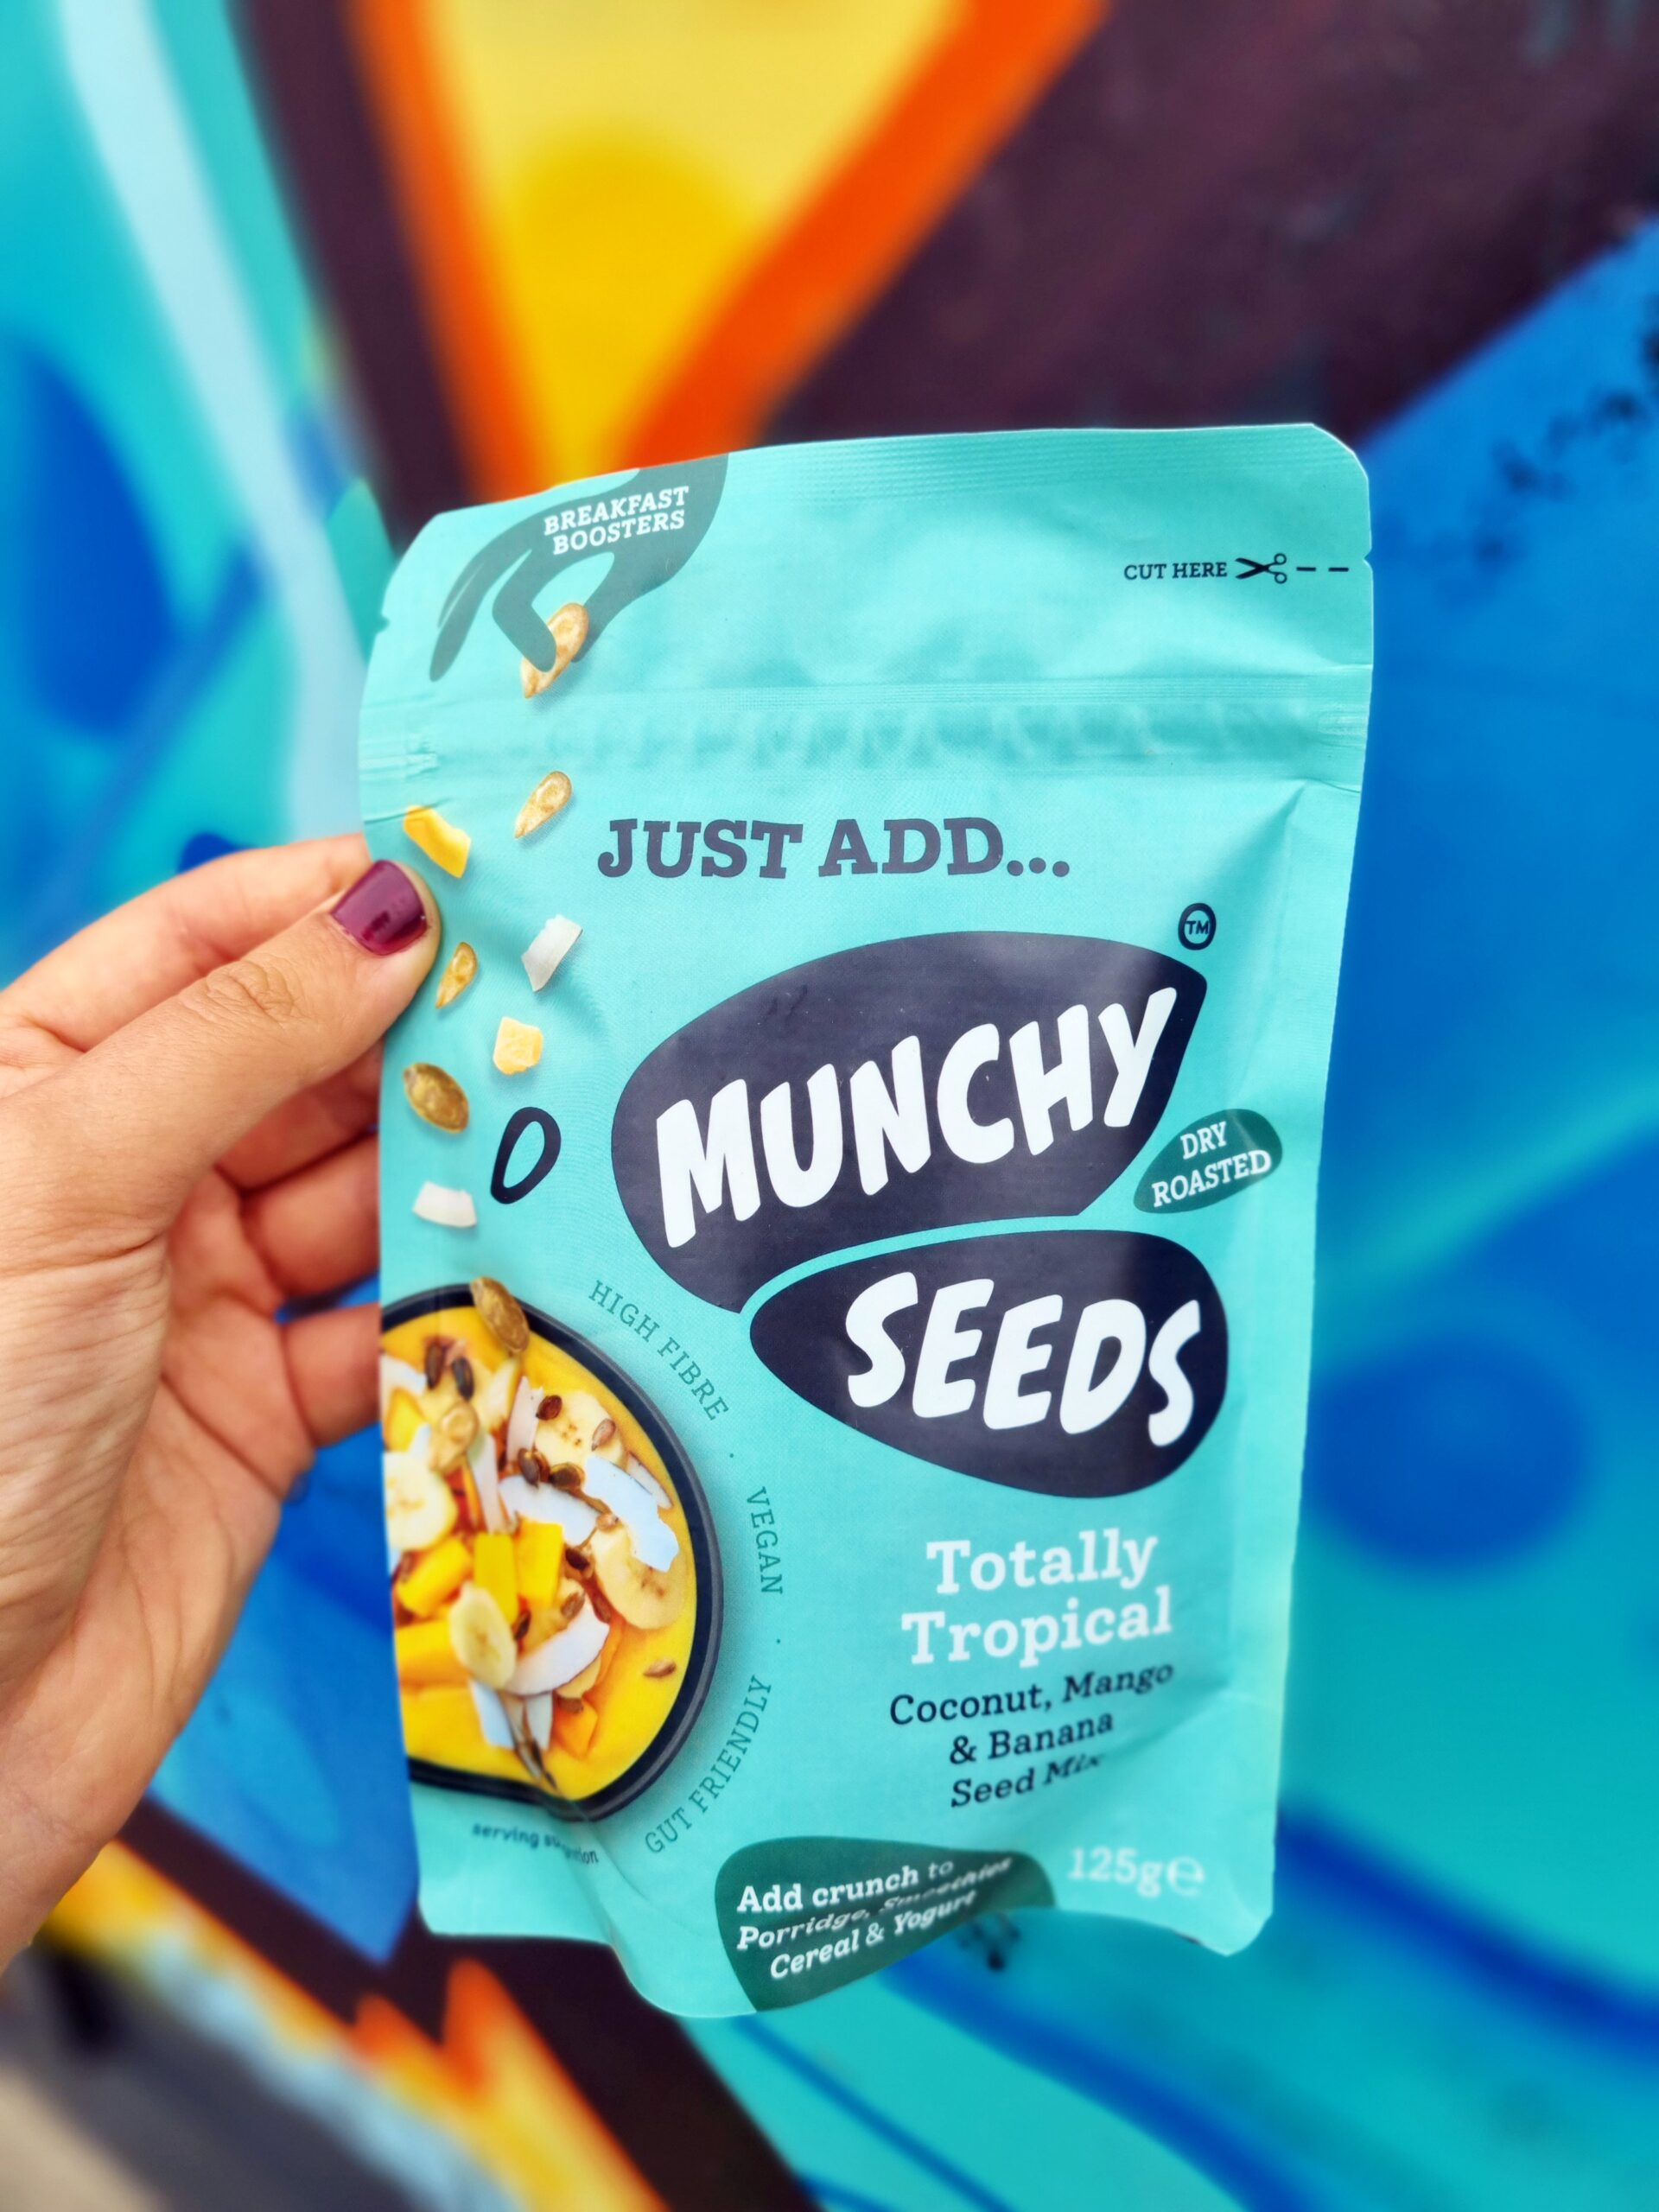 <img src="munchy seeds.jpg" alt="munchy seeds tropical seed mix"/>